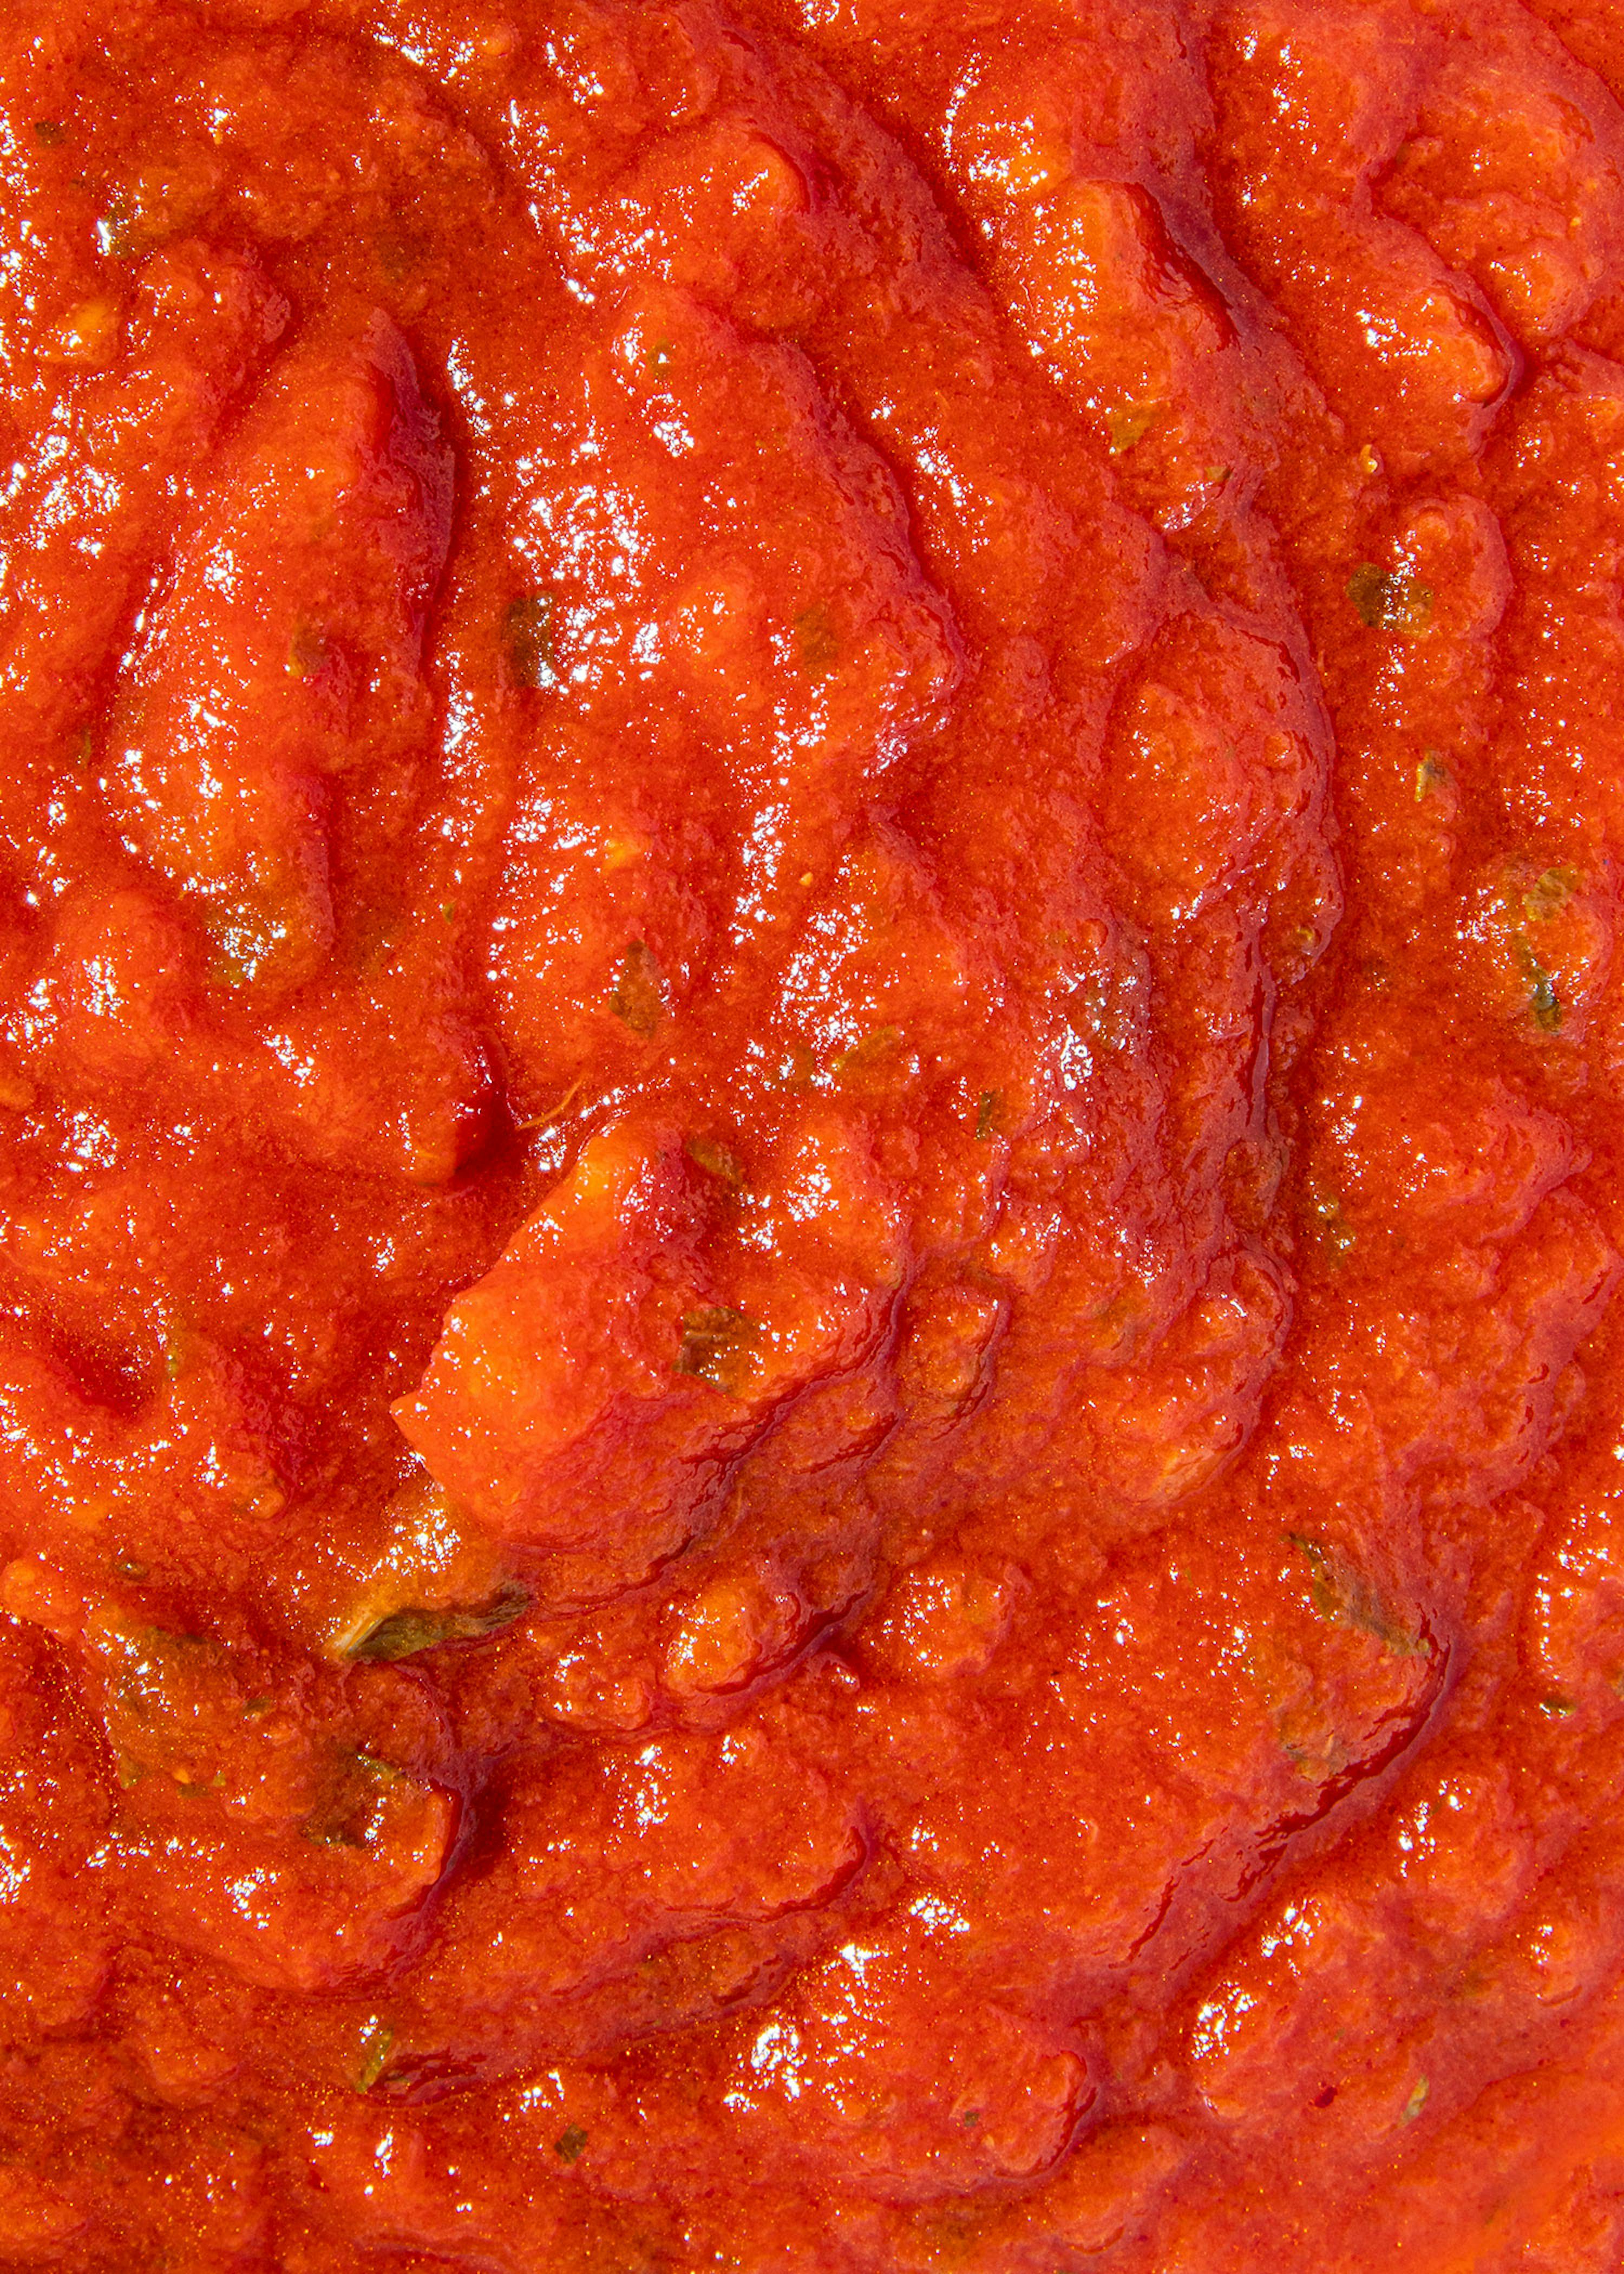 La vraie sauce tomate italienne classique - Saveurs